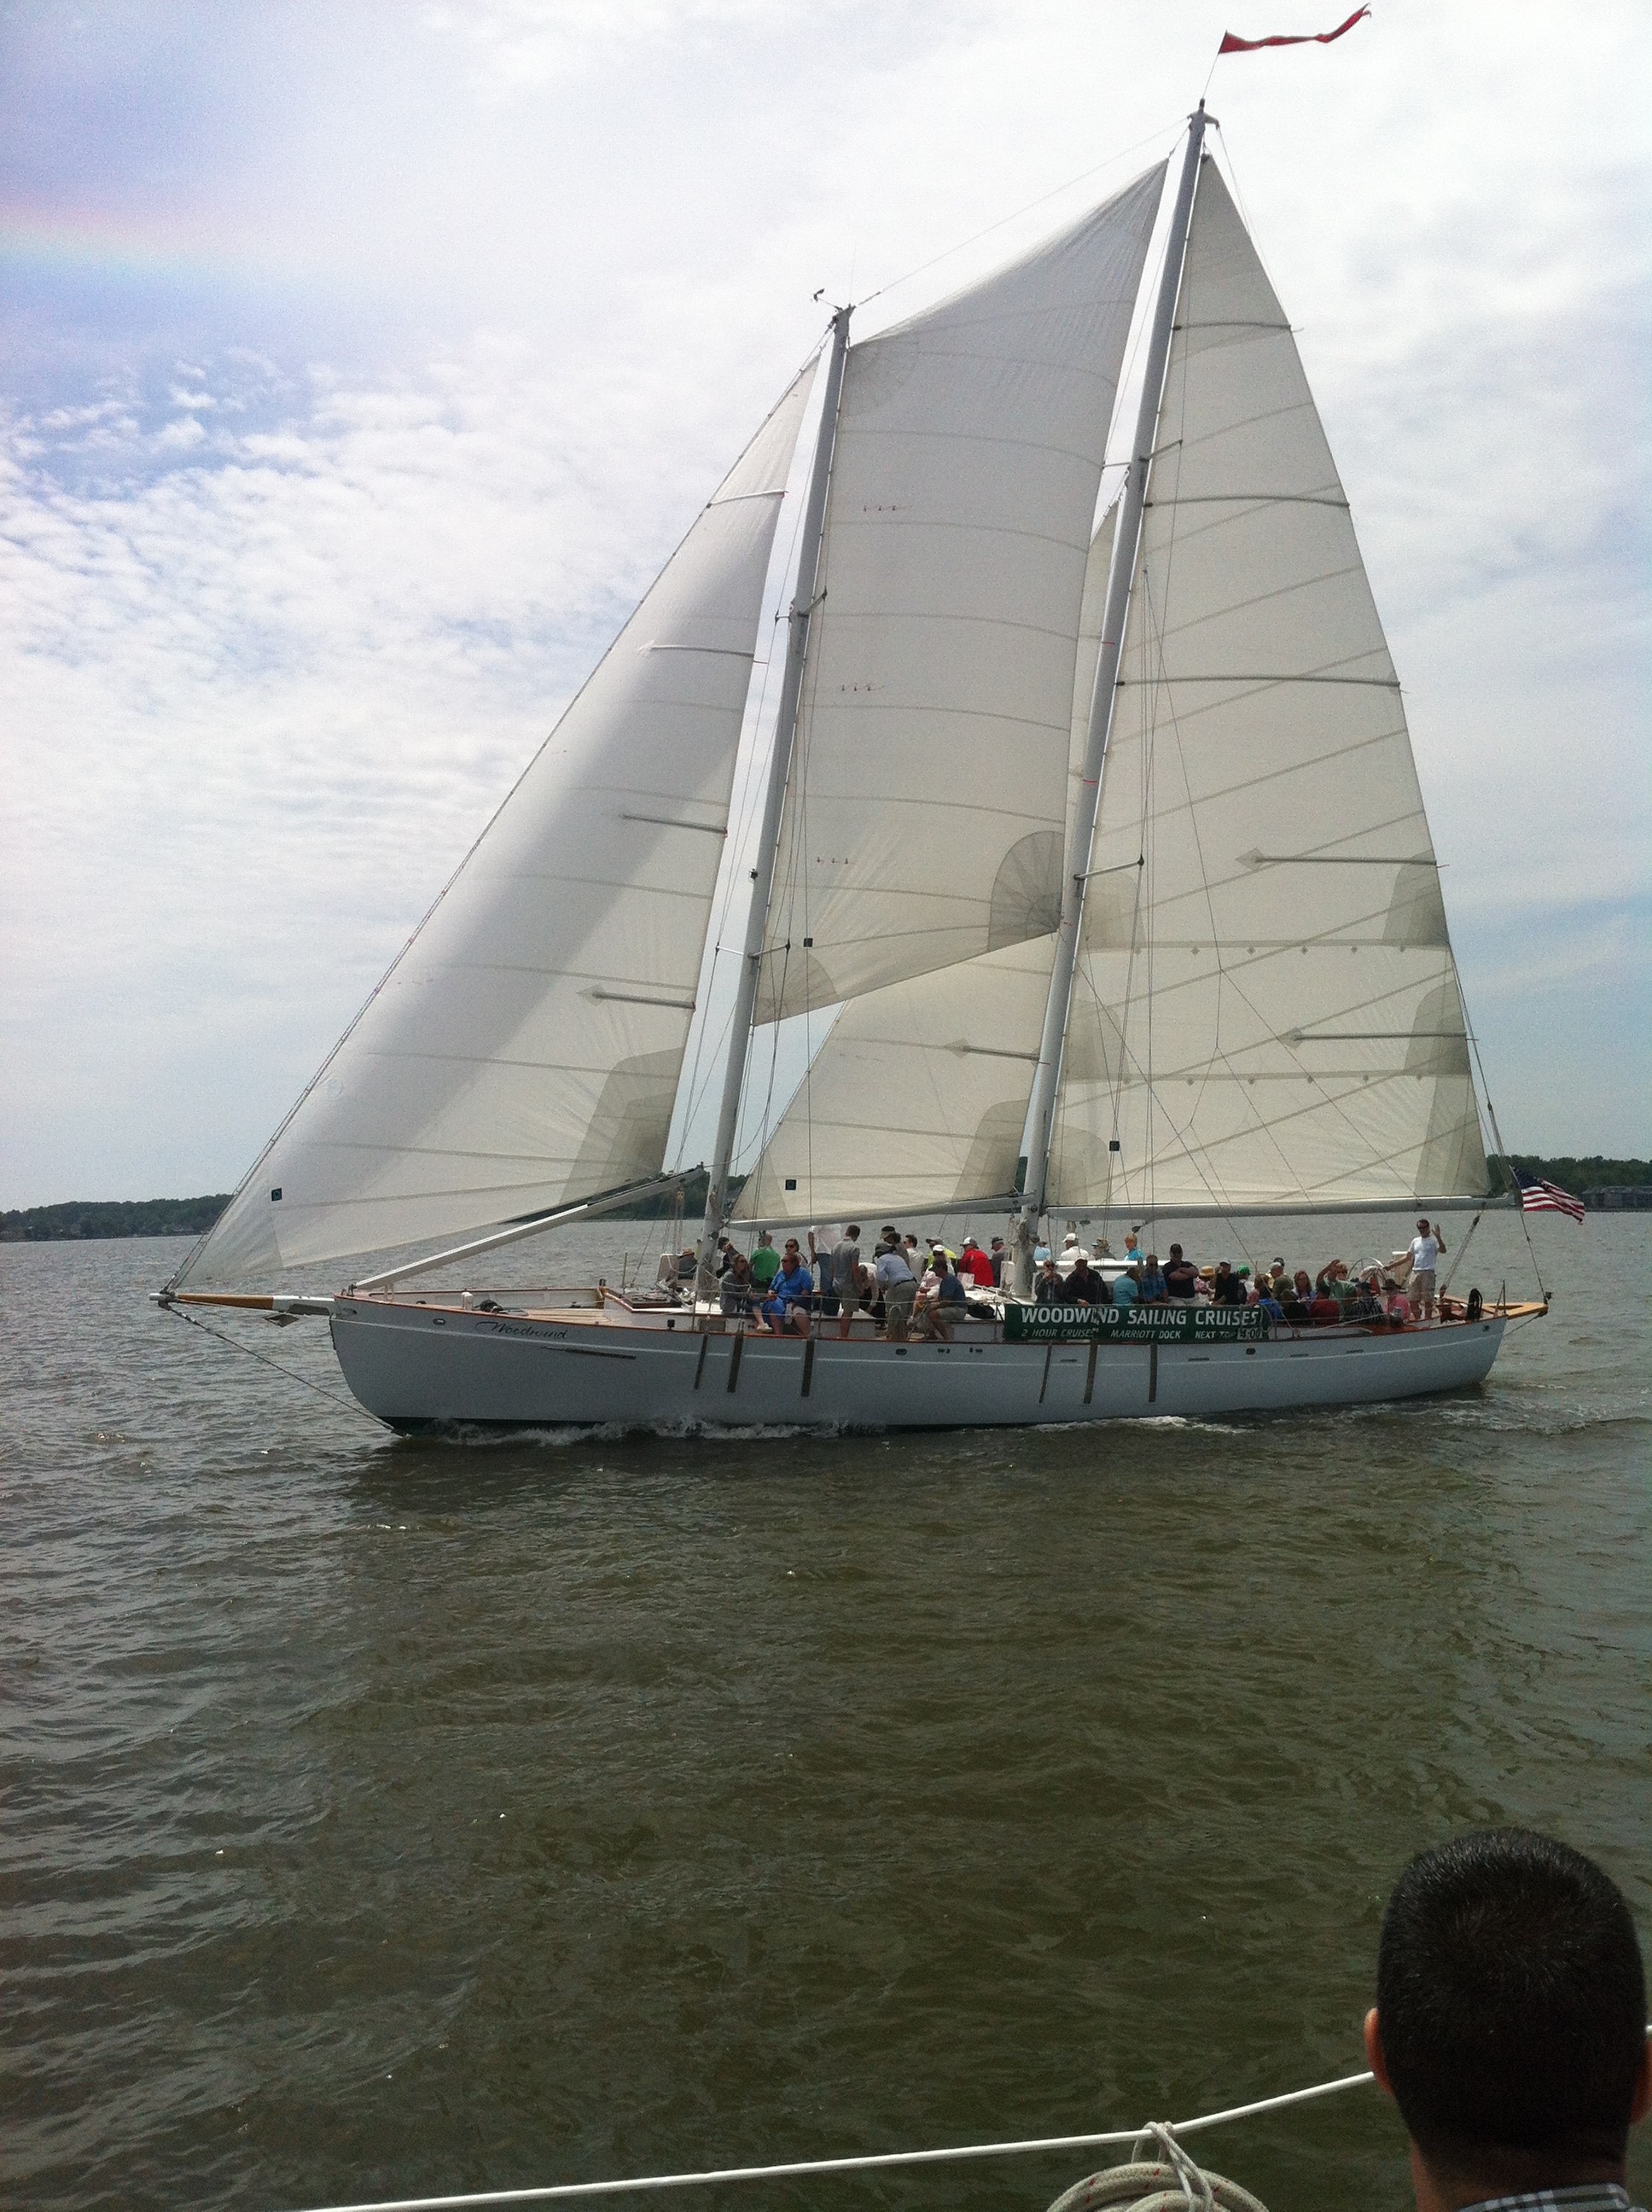 Schooner sailing along in a stiff breeze